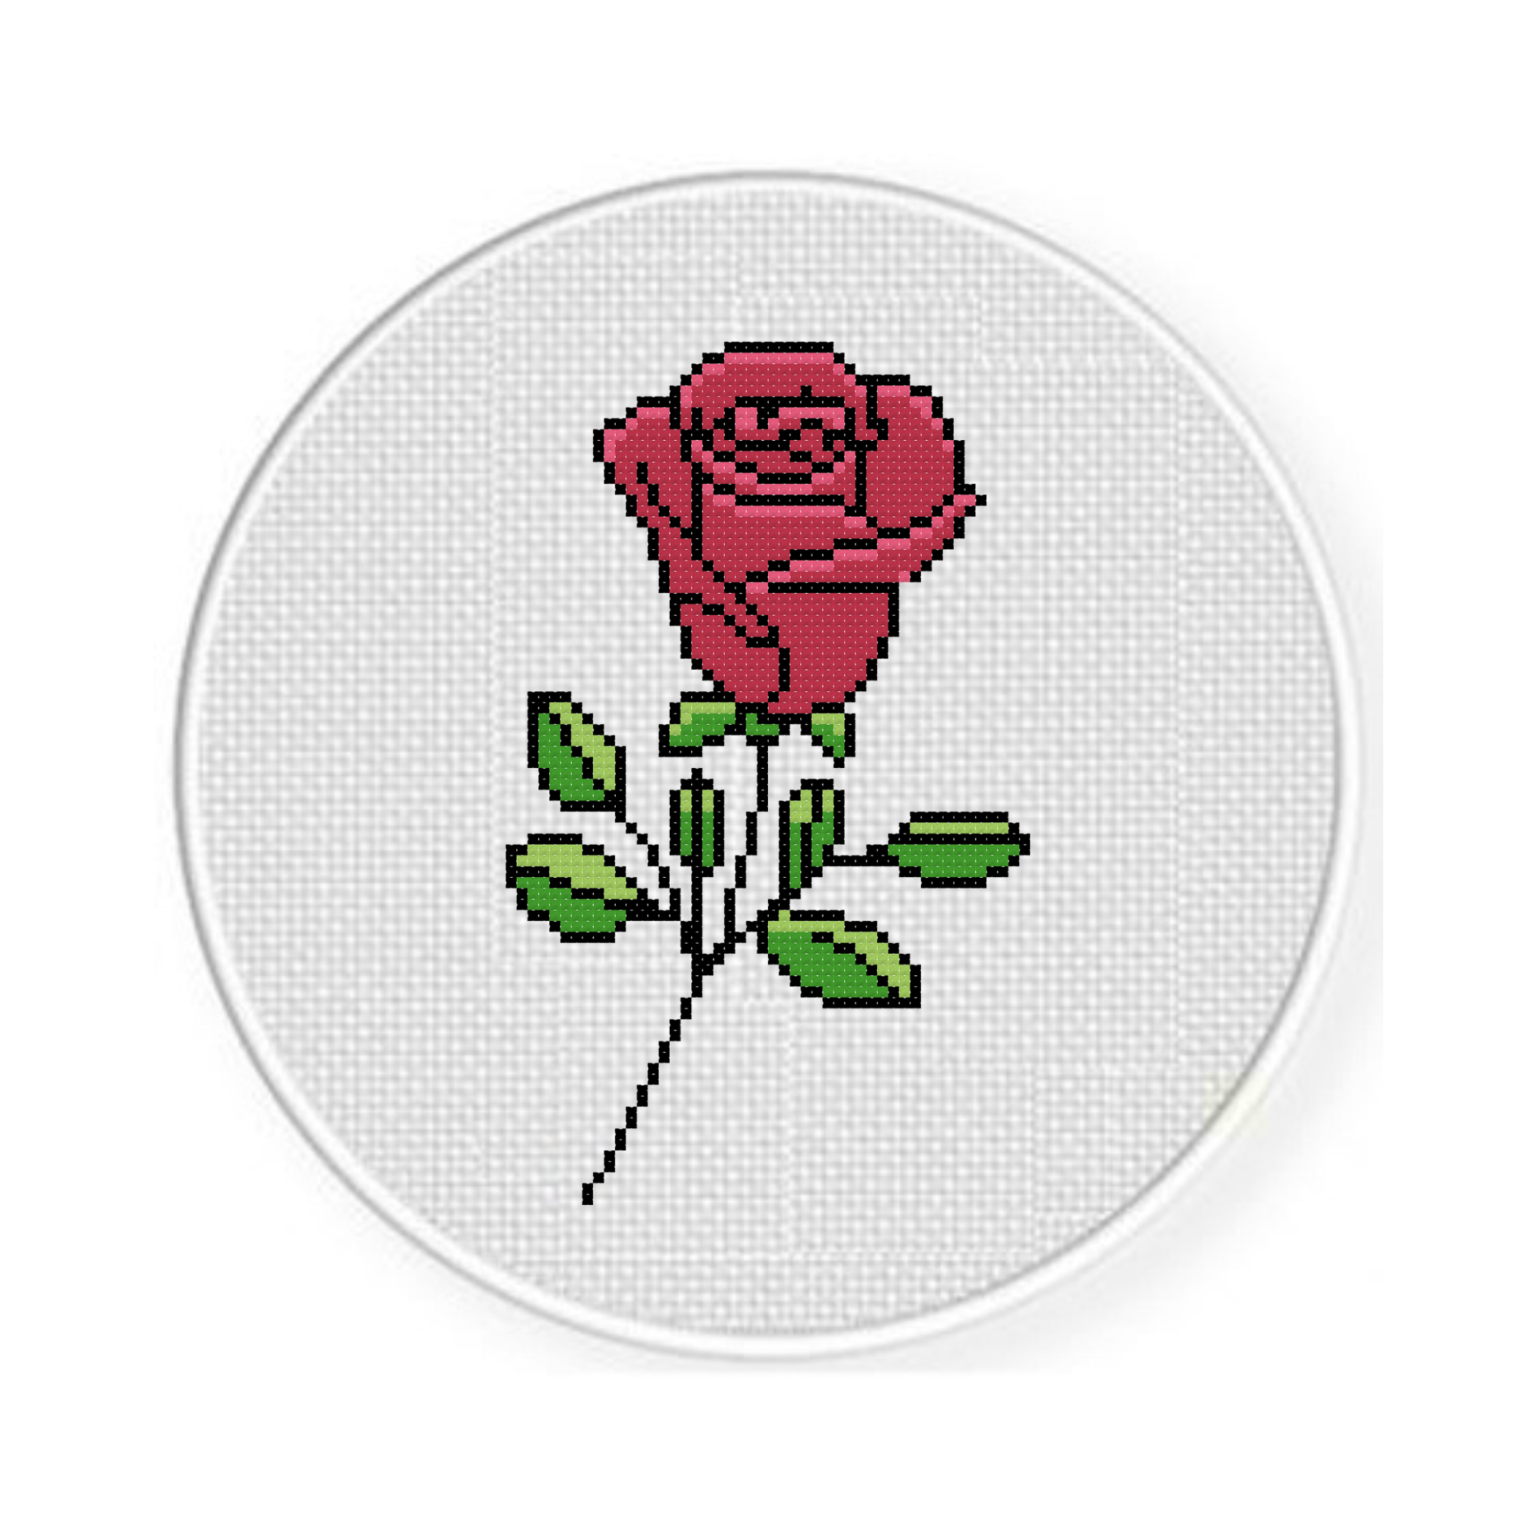 Flower – Daily Cross Stitch